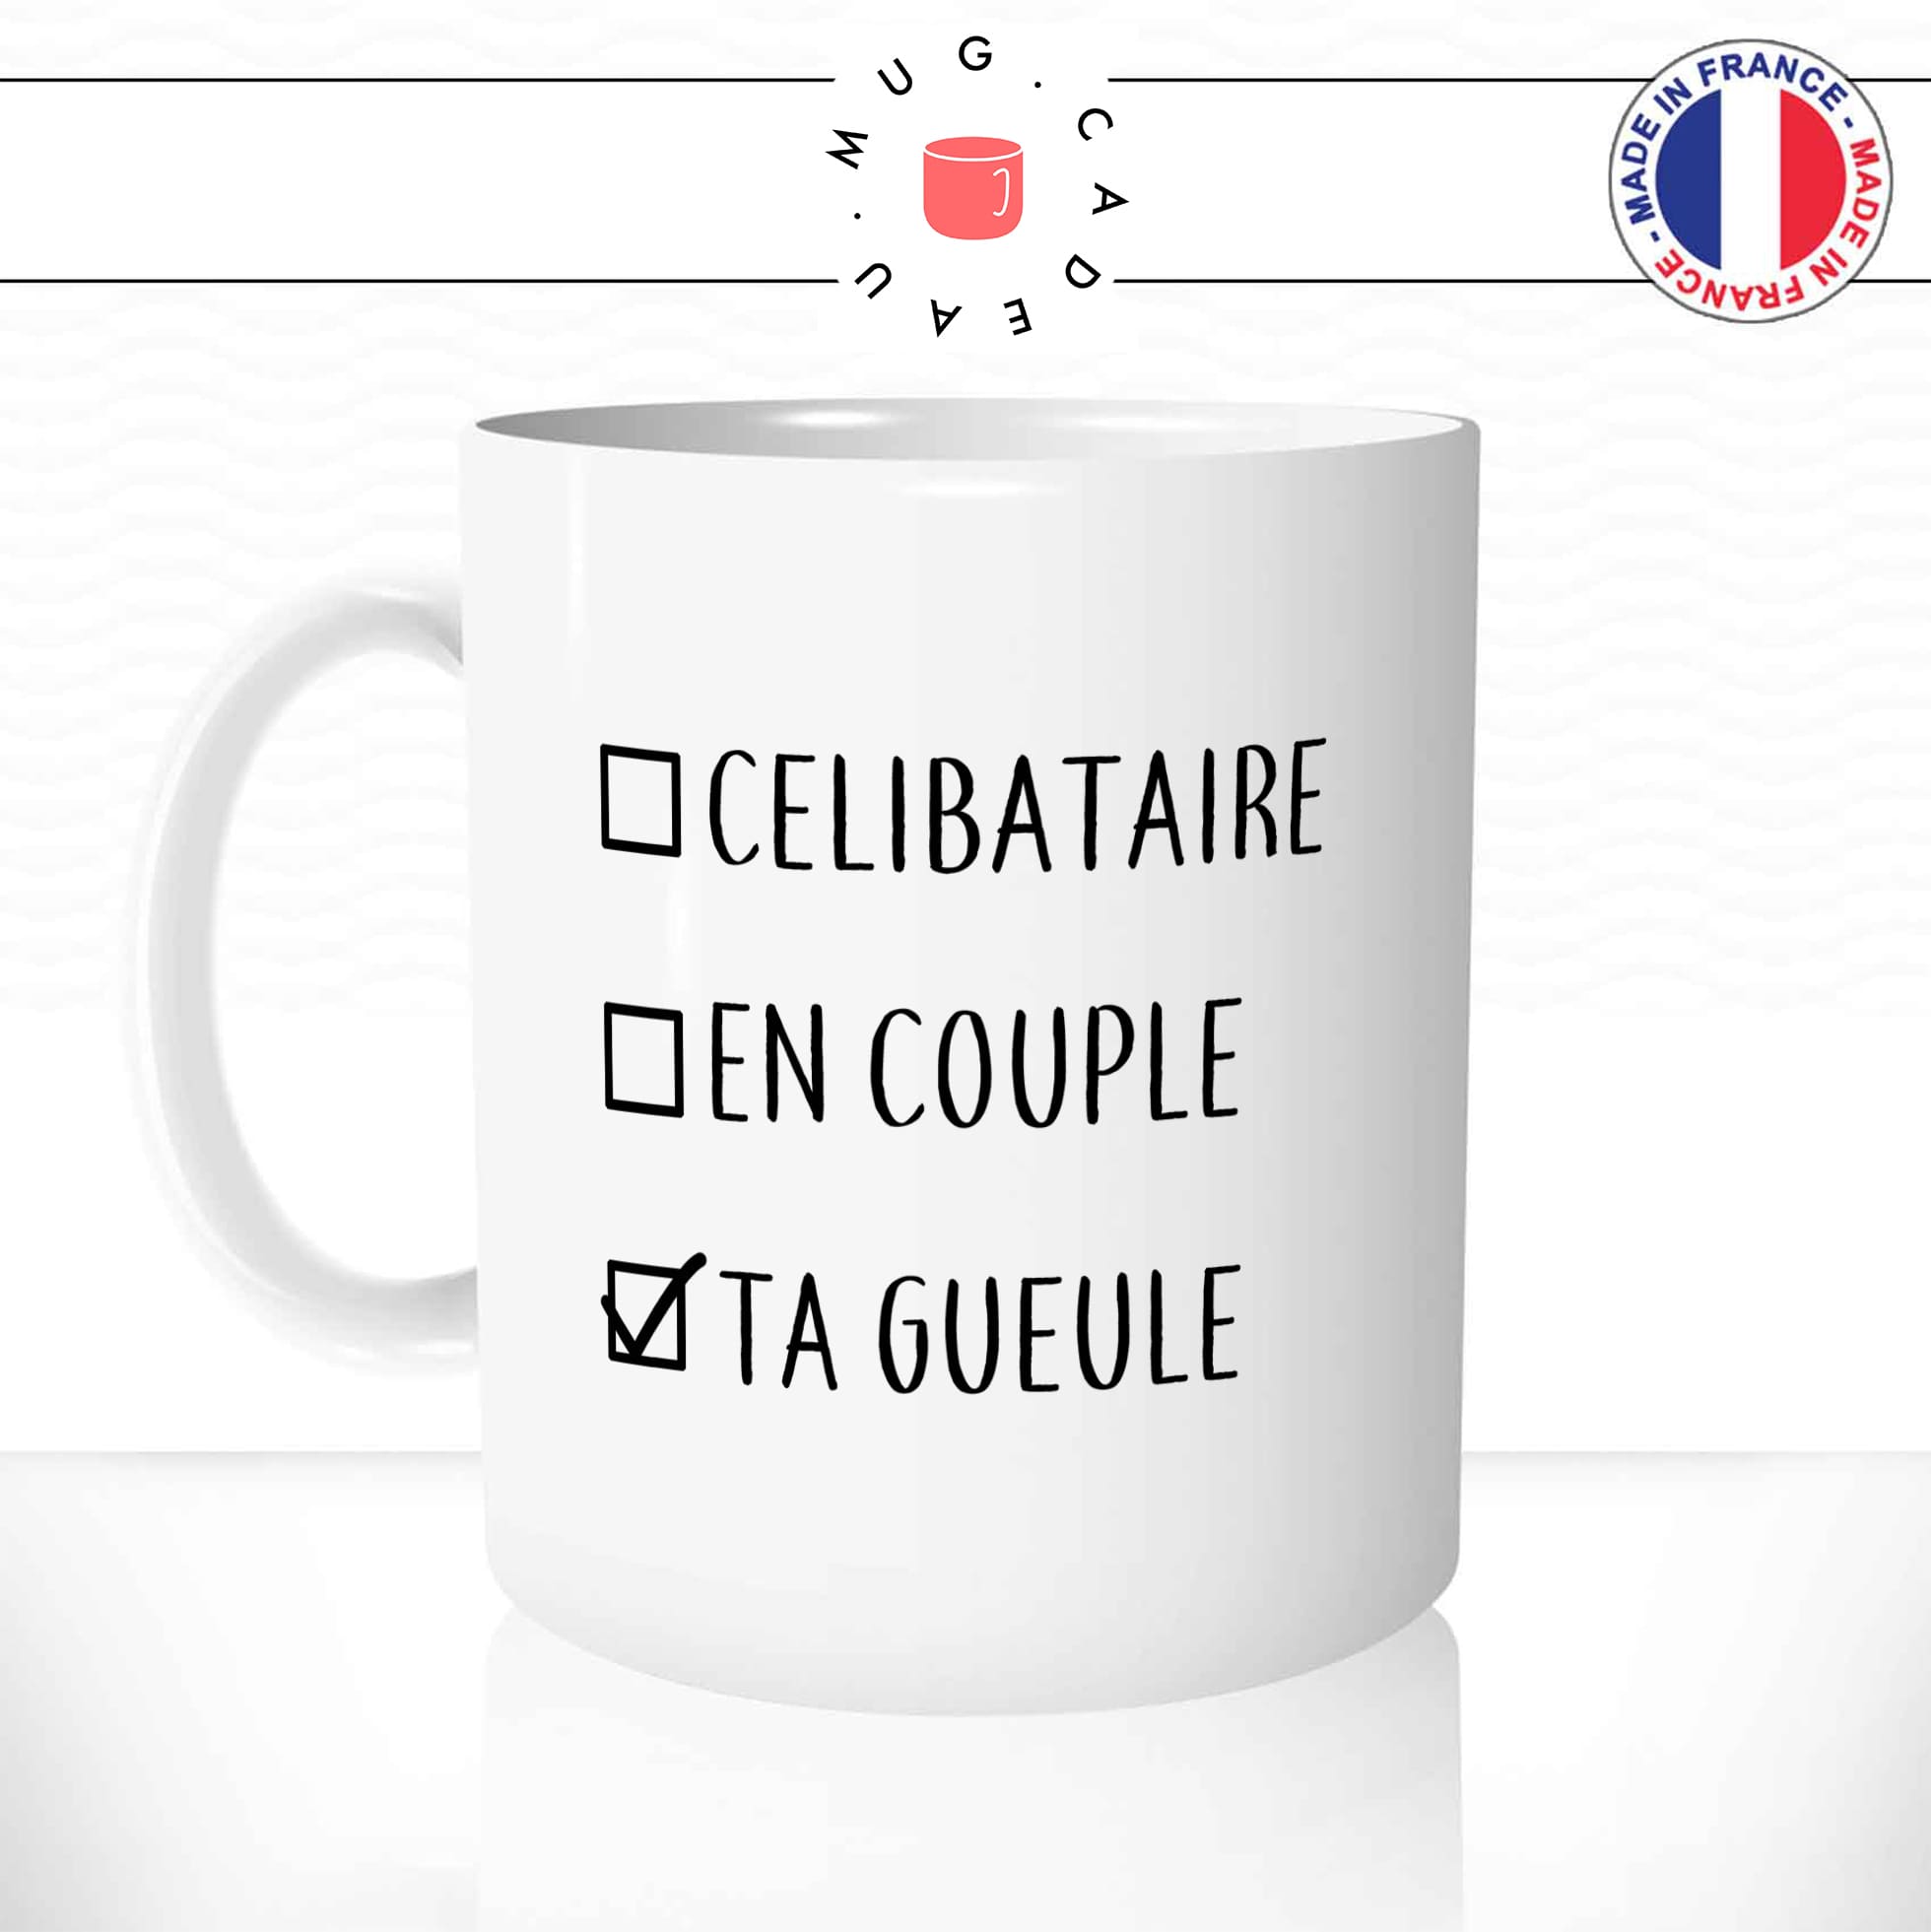 mug-tasse-celibataire-en-couple-ta-gueule-célibat-humour-drole-original-mugs-tasses-café-thé-idée-cadeau-offrir-personnalisée